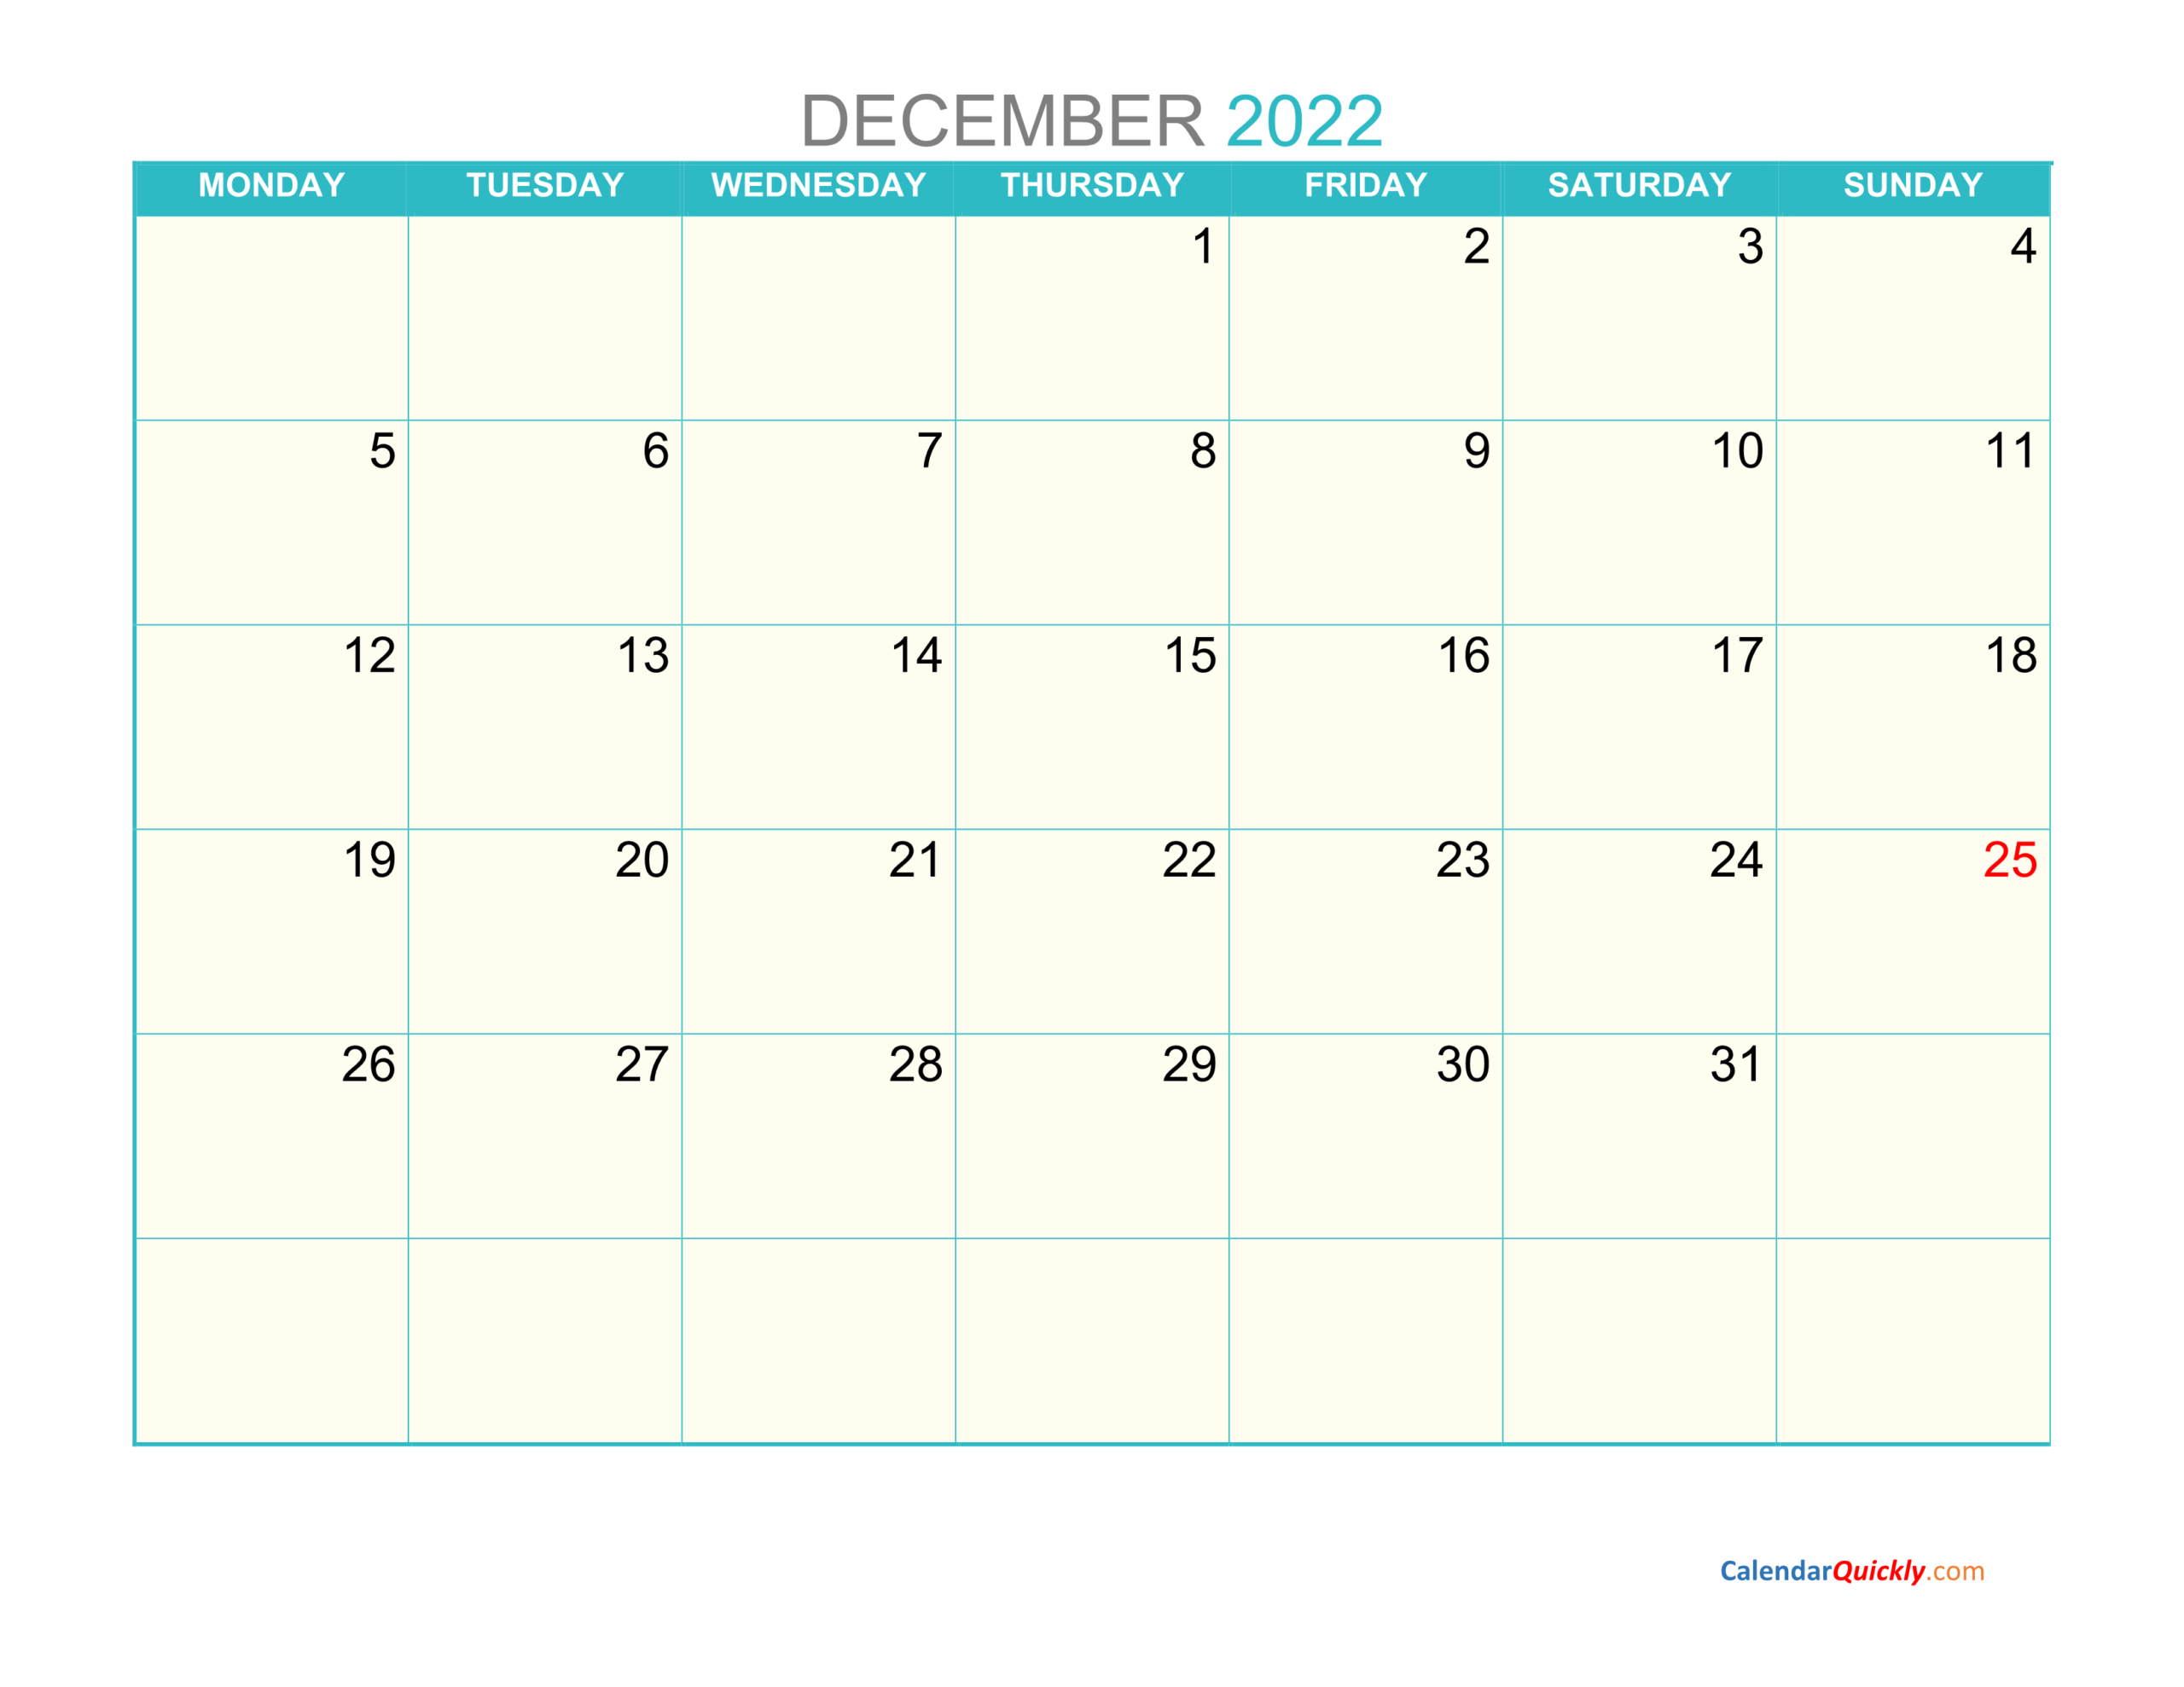 December Monday 2022 Calendar Printable | Calendar Quickly  Free Printable Calendar 2022 December